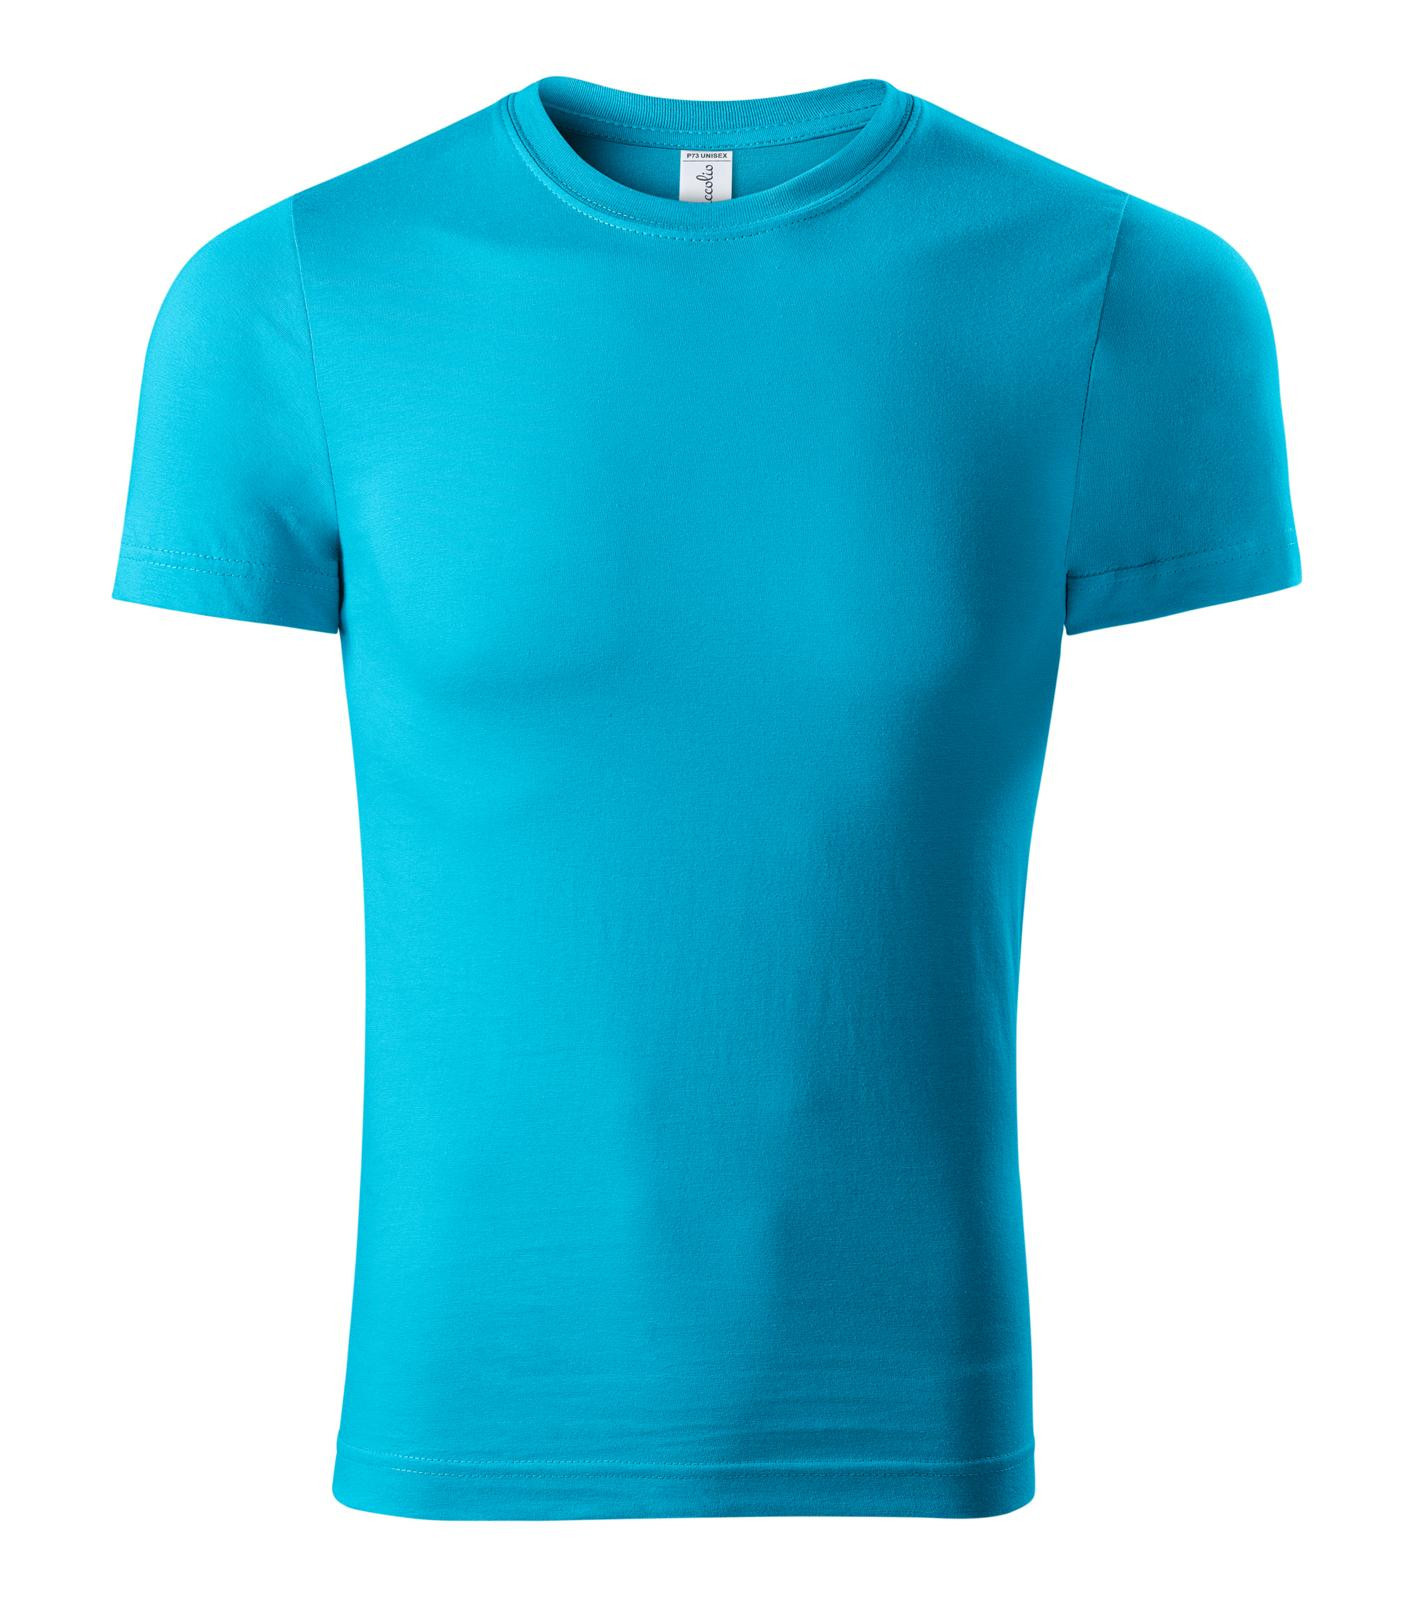 Unisex tričko Piccolio Paint P73 - veľkosť: L, farba: tyrkysová